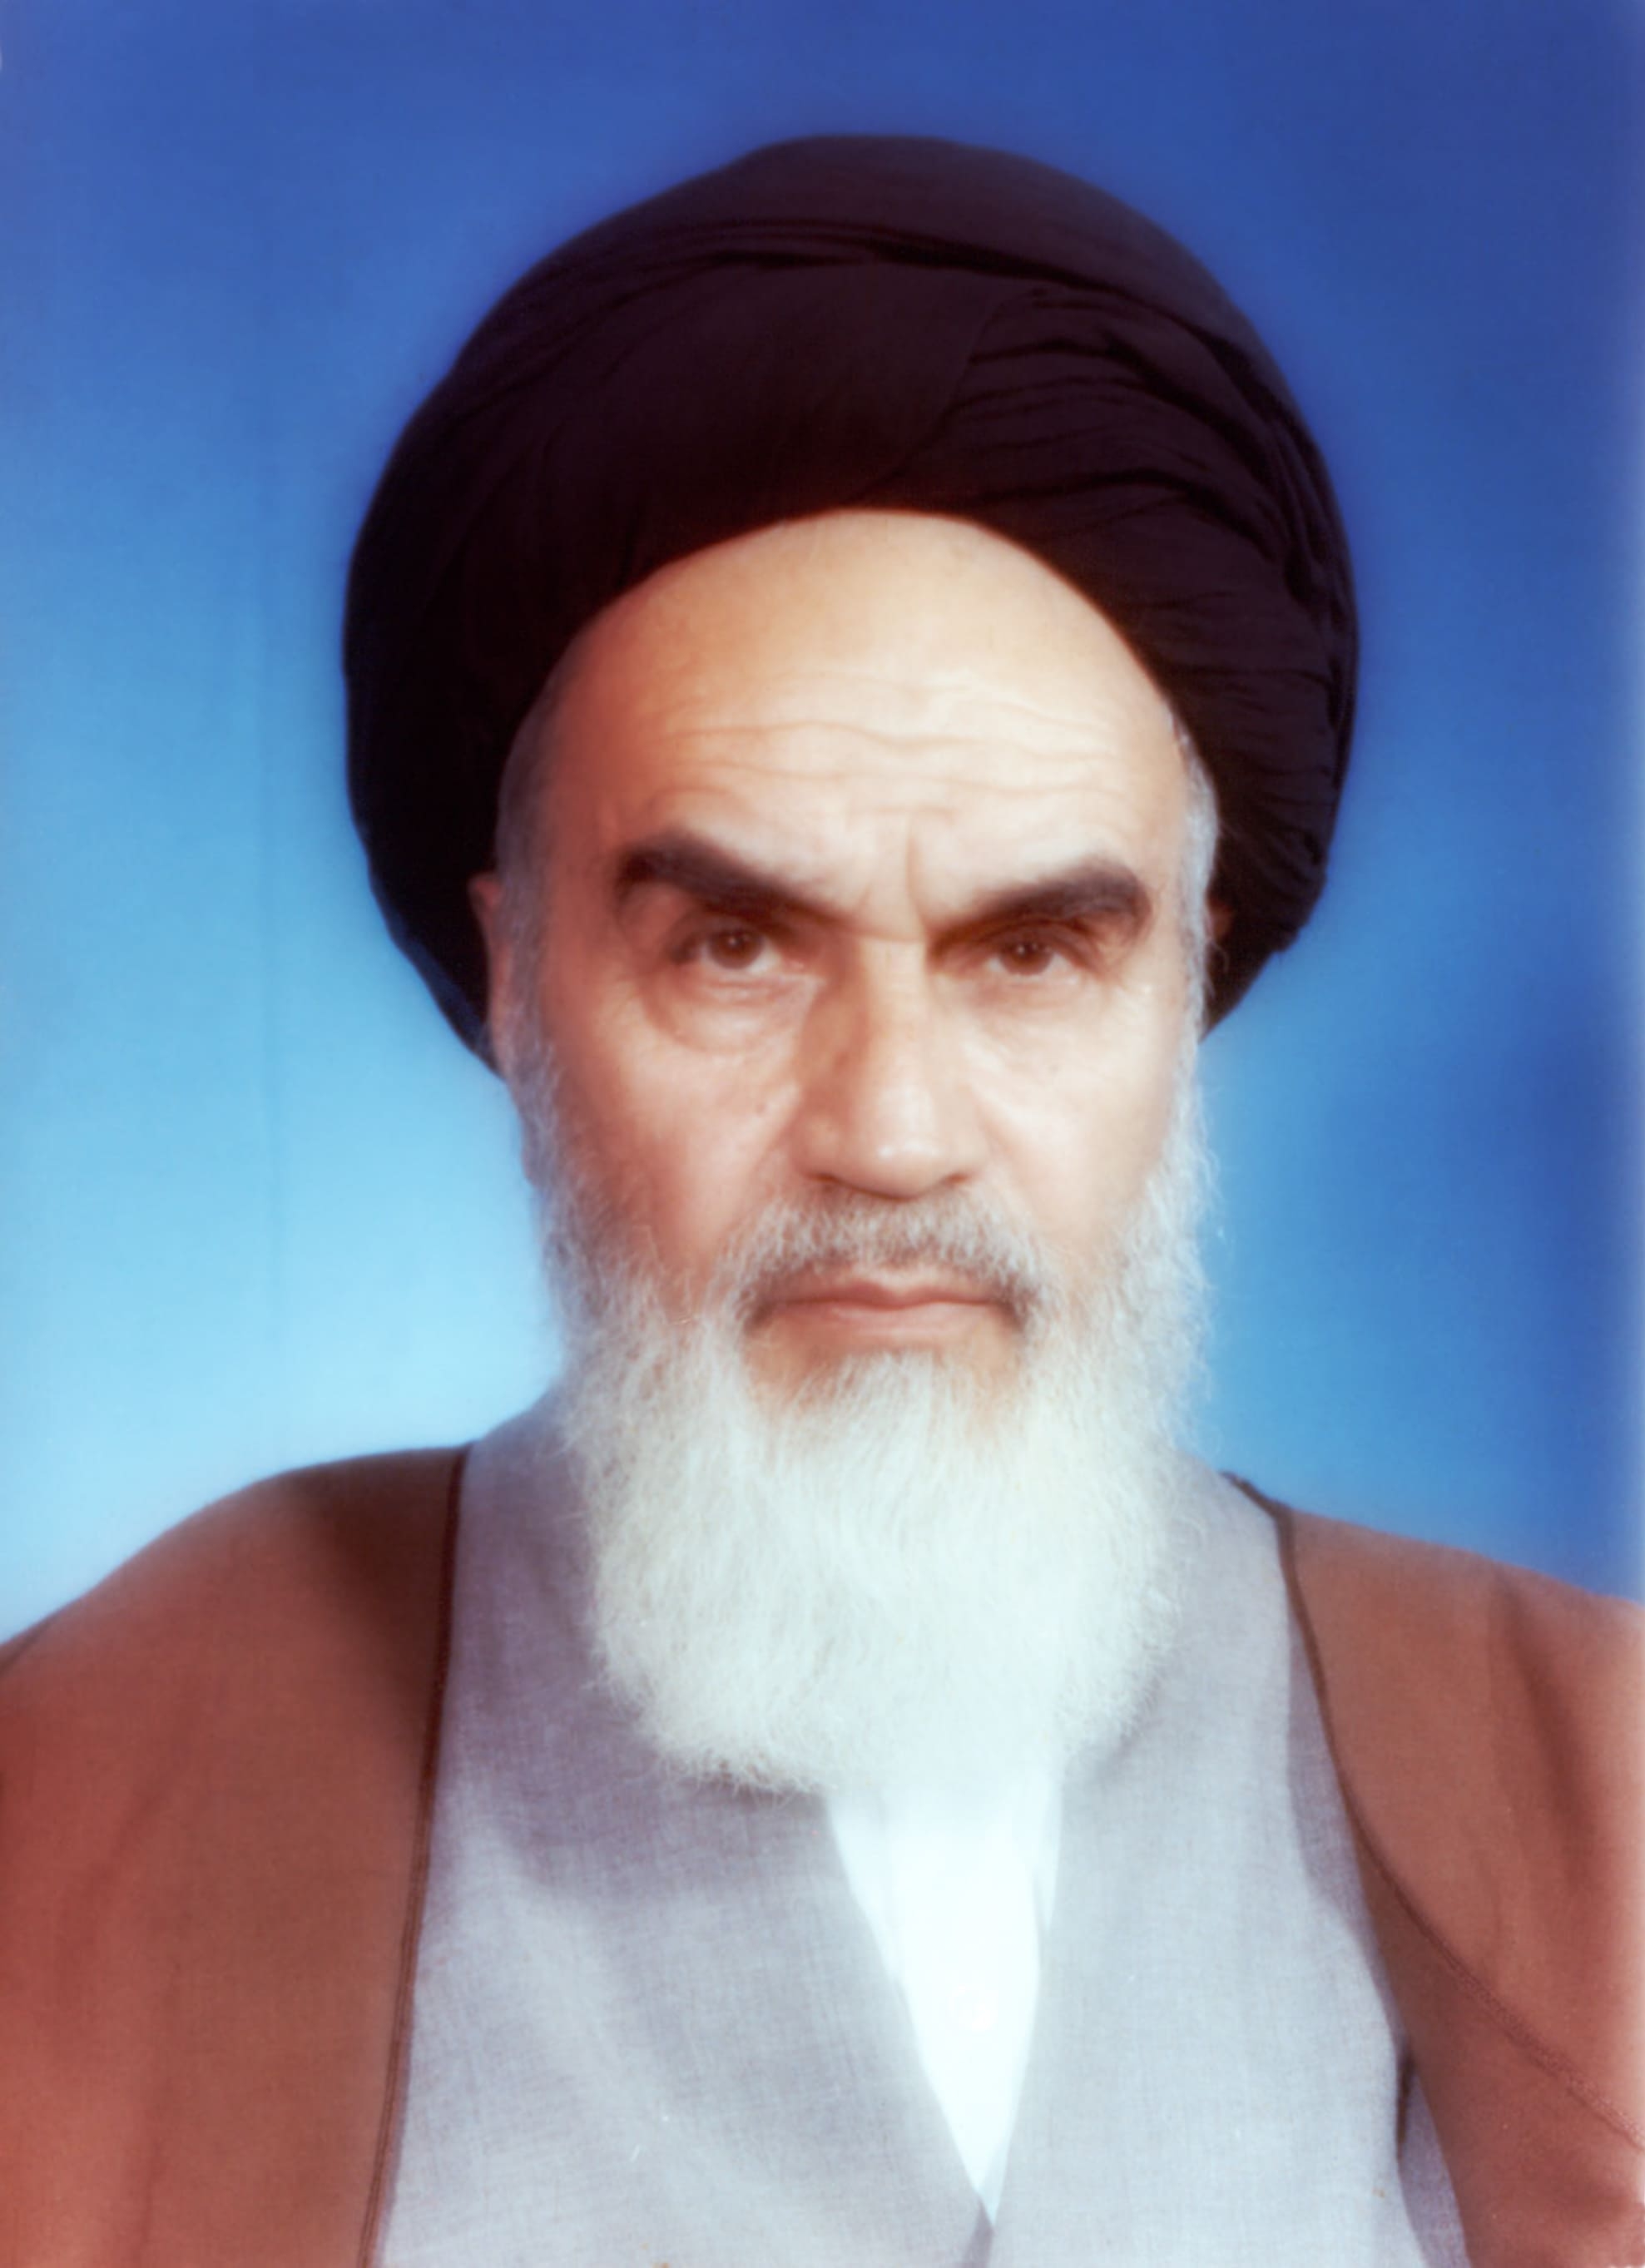 auteur Ruhollah Khomeini de la citation Si l'on permettait à un infidèle de poursuivre son rôle de corrupteur de la Terre, la souffrance morale de l'infidèle sera bien pire. Si l'on tue l'infidèle, et cela l'empêche de perpétrer ses méfaits, sa mort sera une bénédiction pour lui.